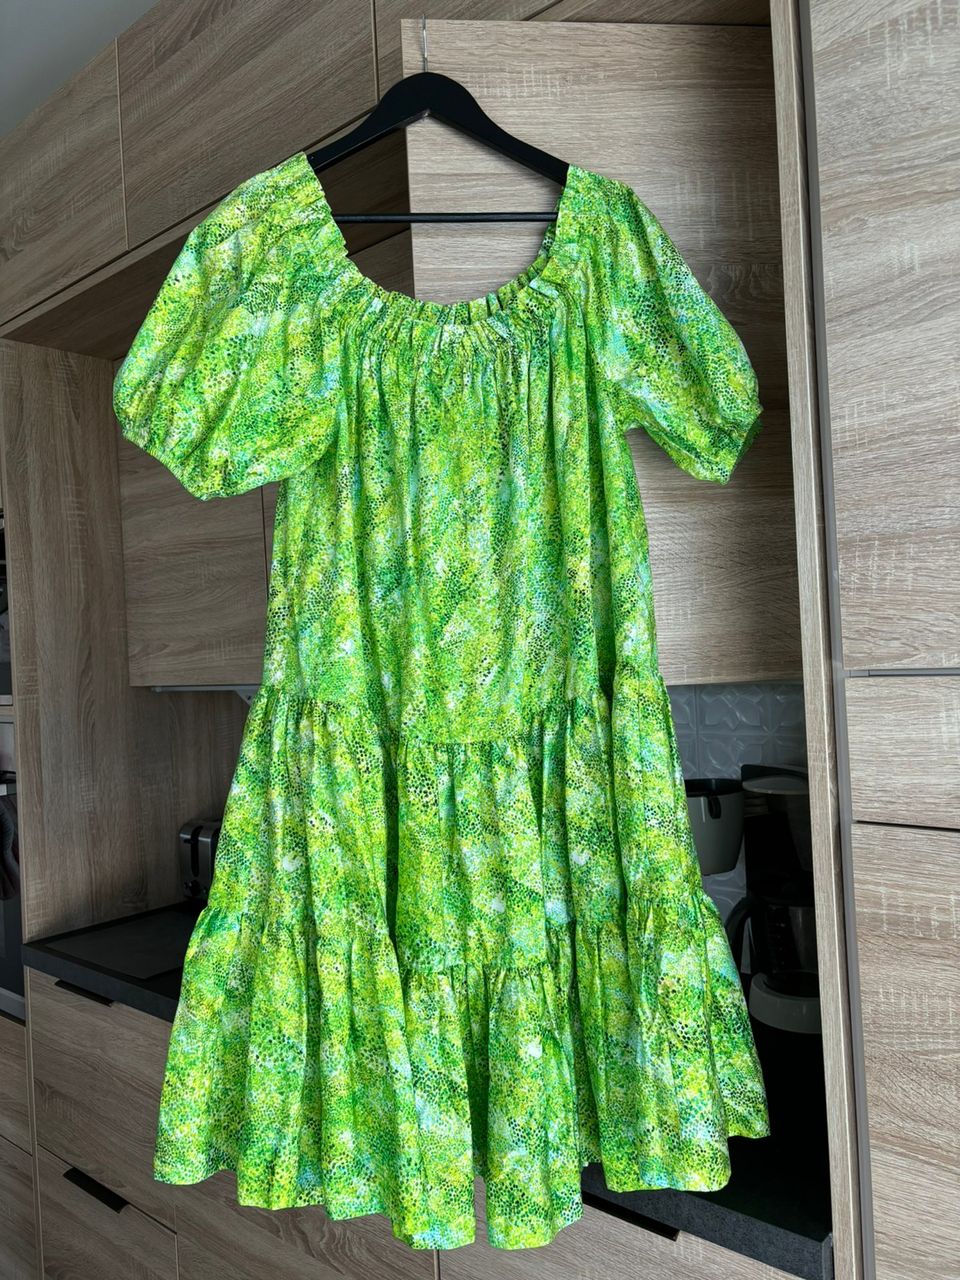 Ivana Helsinki Paola suhonen mekko puuvilla